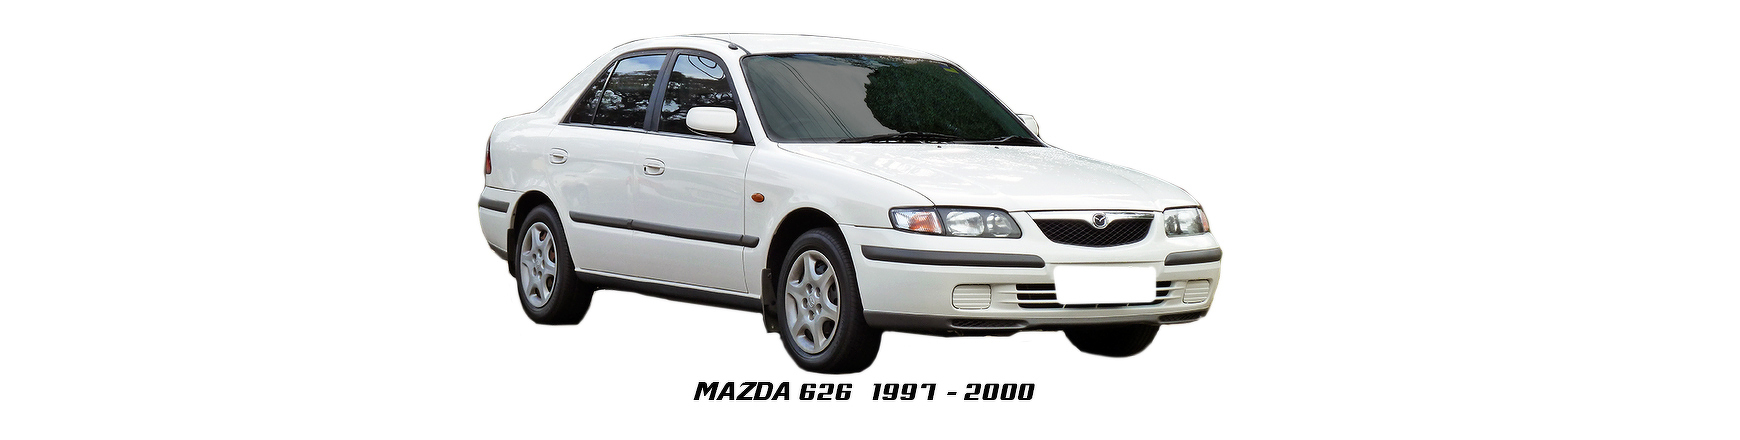 Piezas y Recambios de Mazda 626 de 1997 a 2000 | Visite Veramauto.es